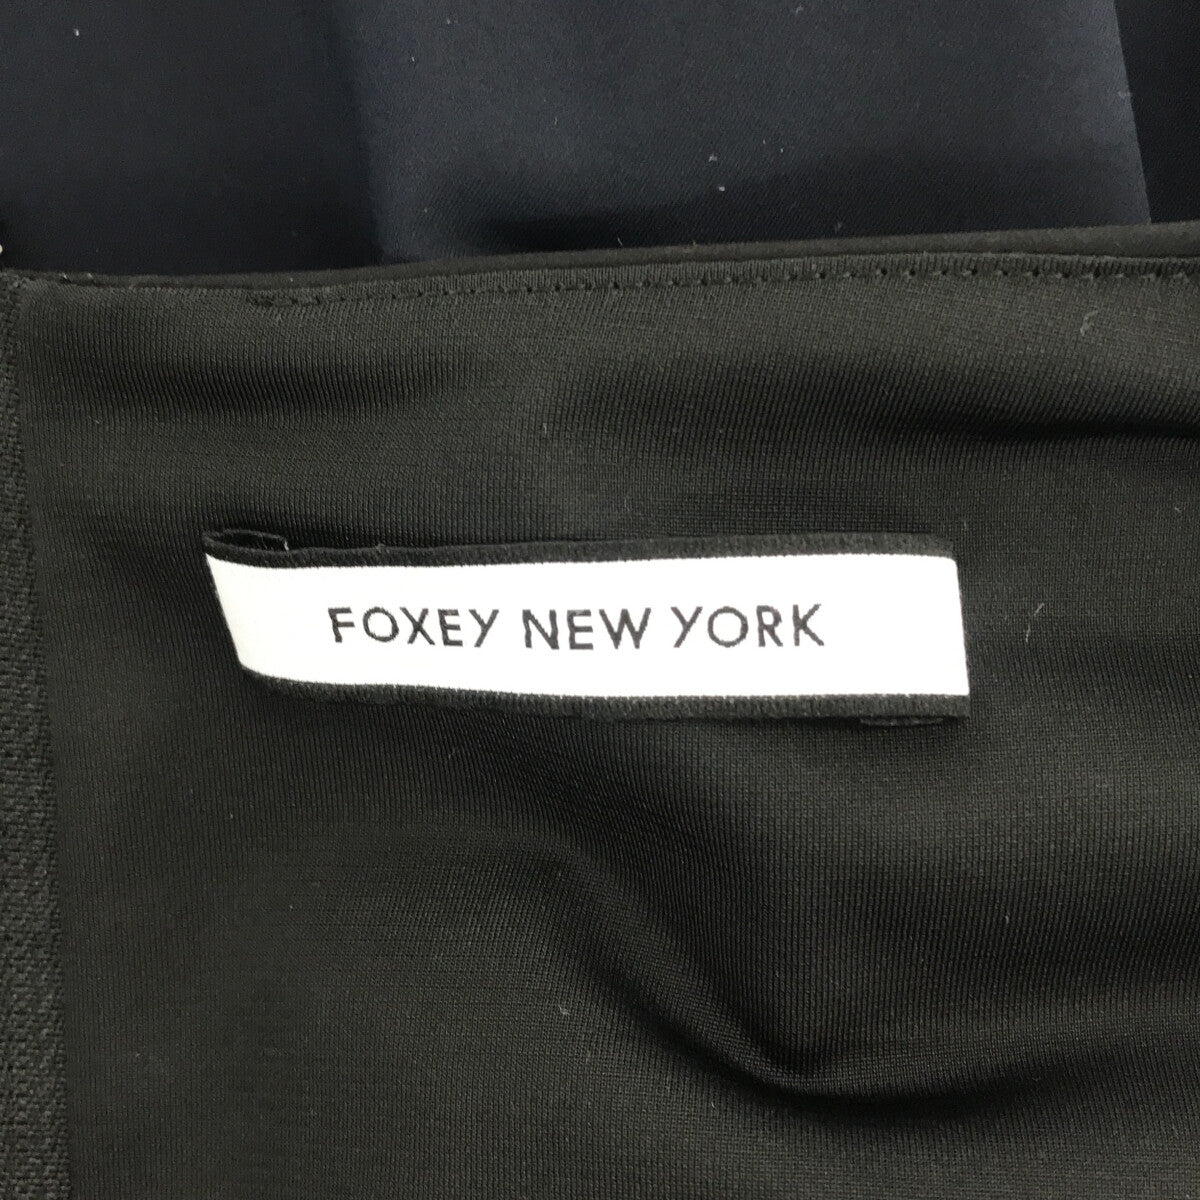 素材レーヨンポリウレタン【美品】FOXEY NEW YORK ノースリーブワンピース ブラック 40